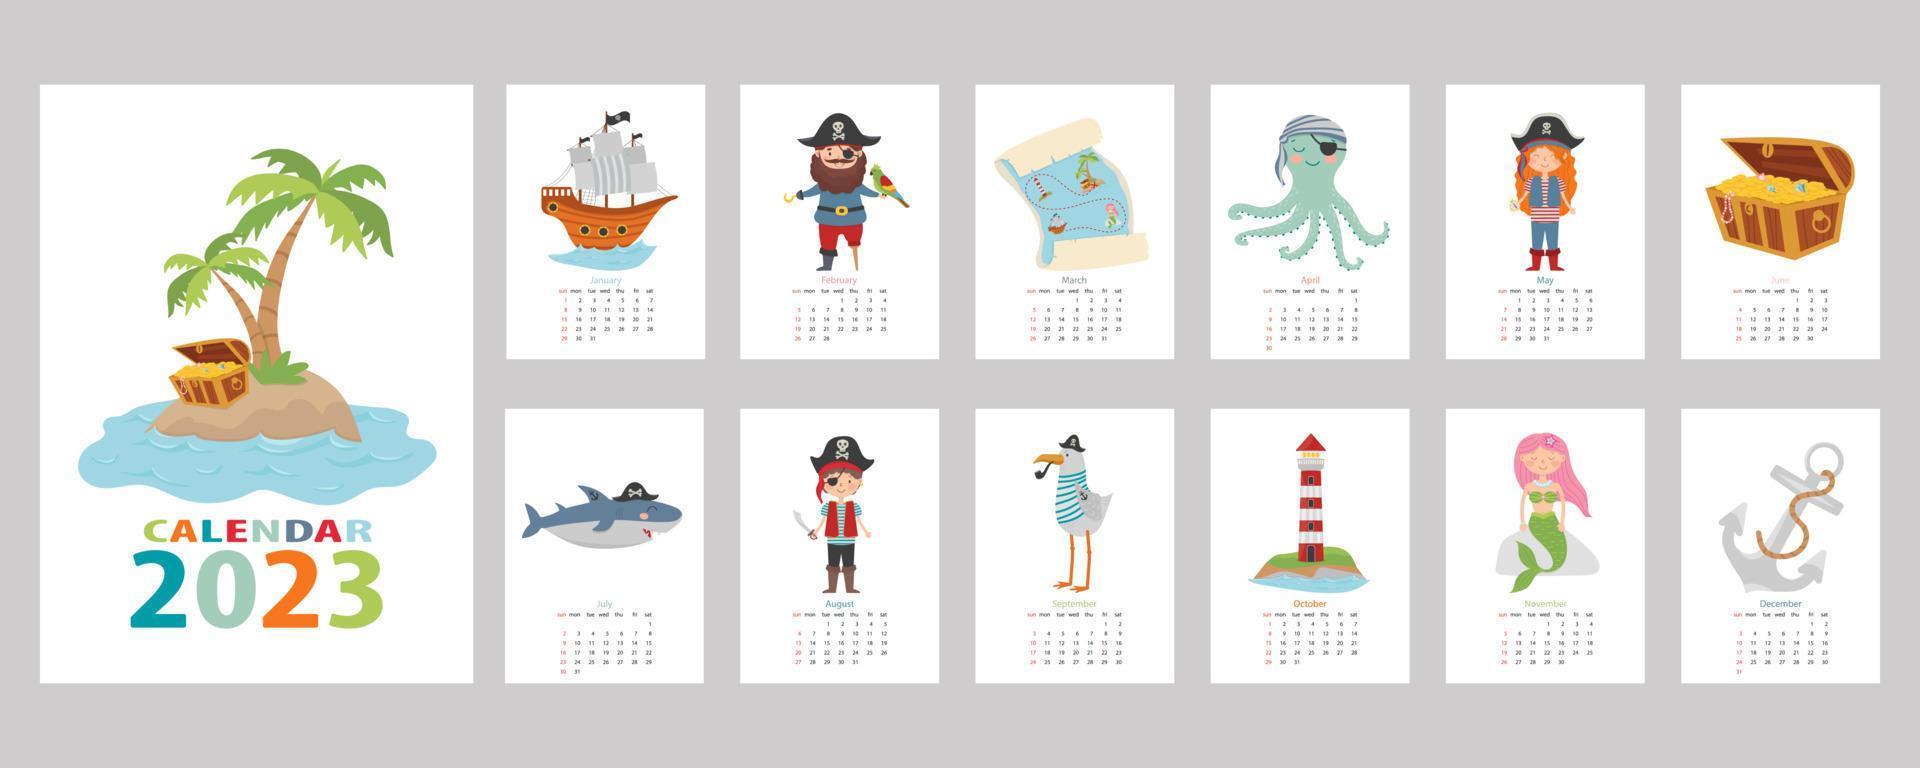 kalender 2023. kleurrijke kinderkalender met piratendesign. piraat, schateiland, haai, octopus, zeemeeuw, zeemeermin, schip en vuurtoren. vector